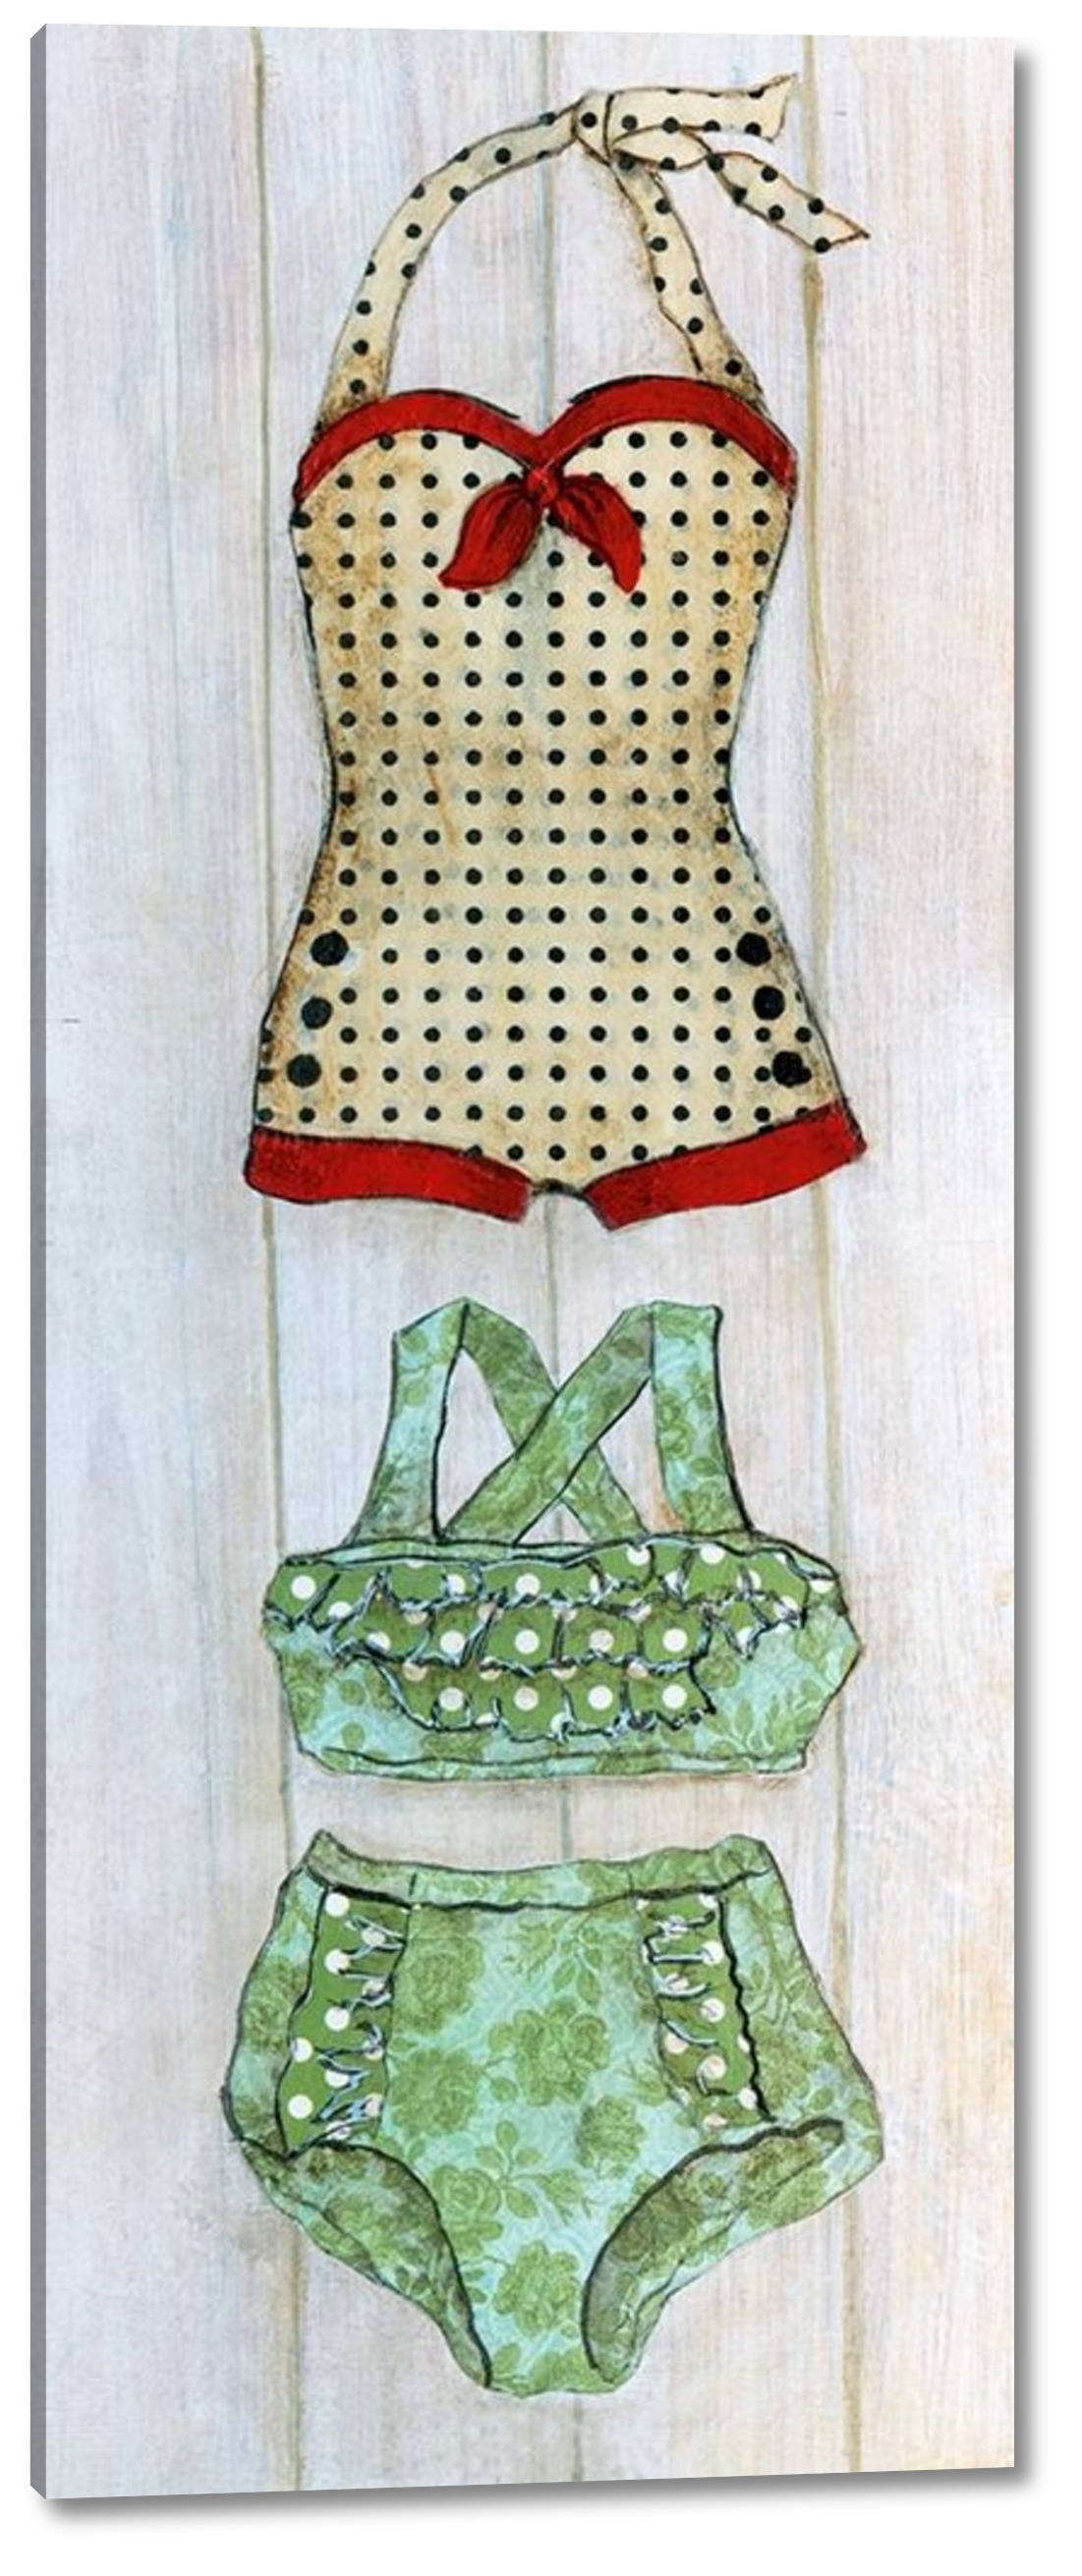 Vintage Bathing Suit - Detail II by Tava Studios | PrintArt.com